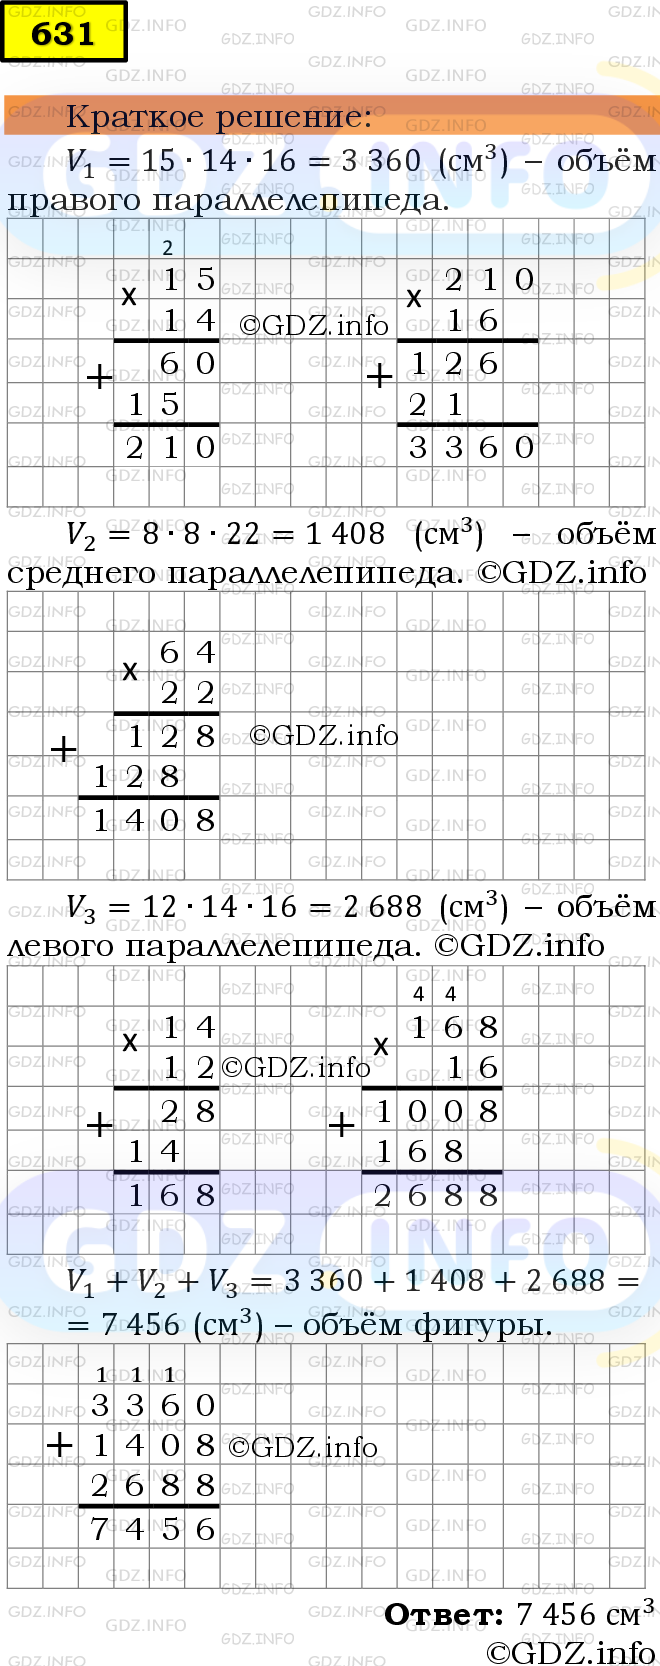 Фото решения 6: Номер №631 из ГДЗ по Математике 5 класс: Мерзляк А.Г. г.